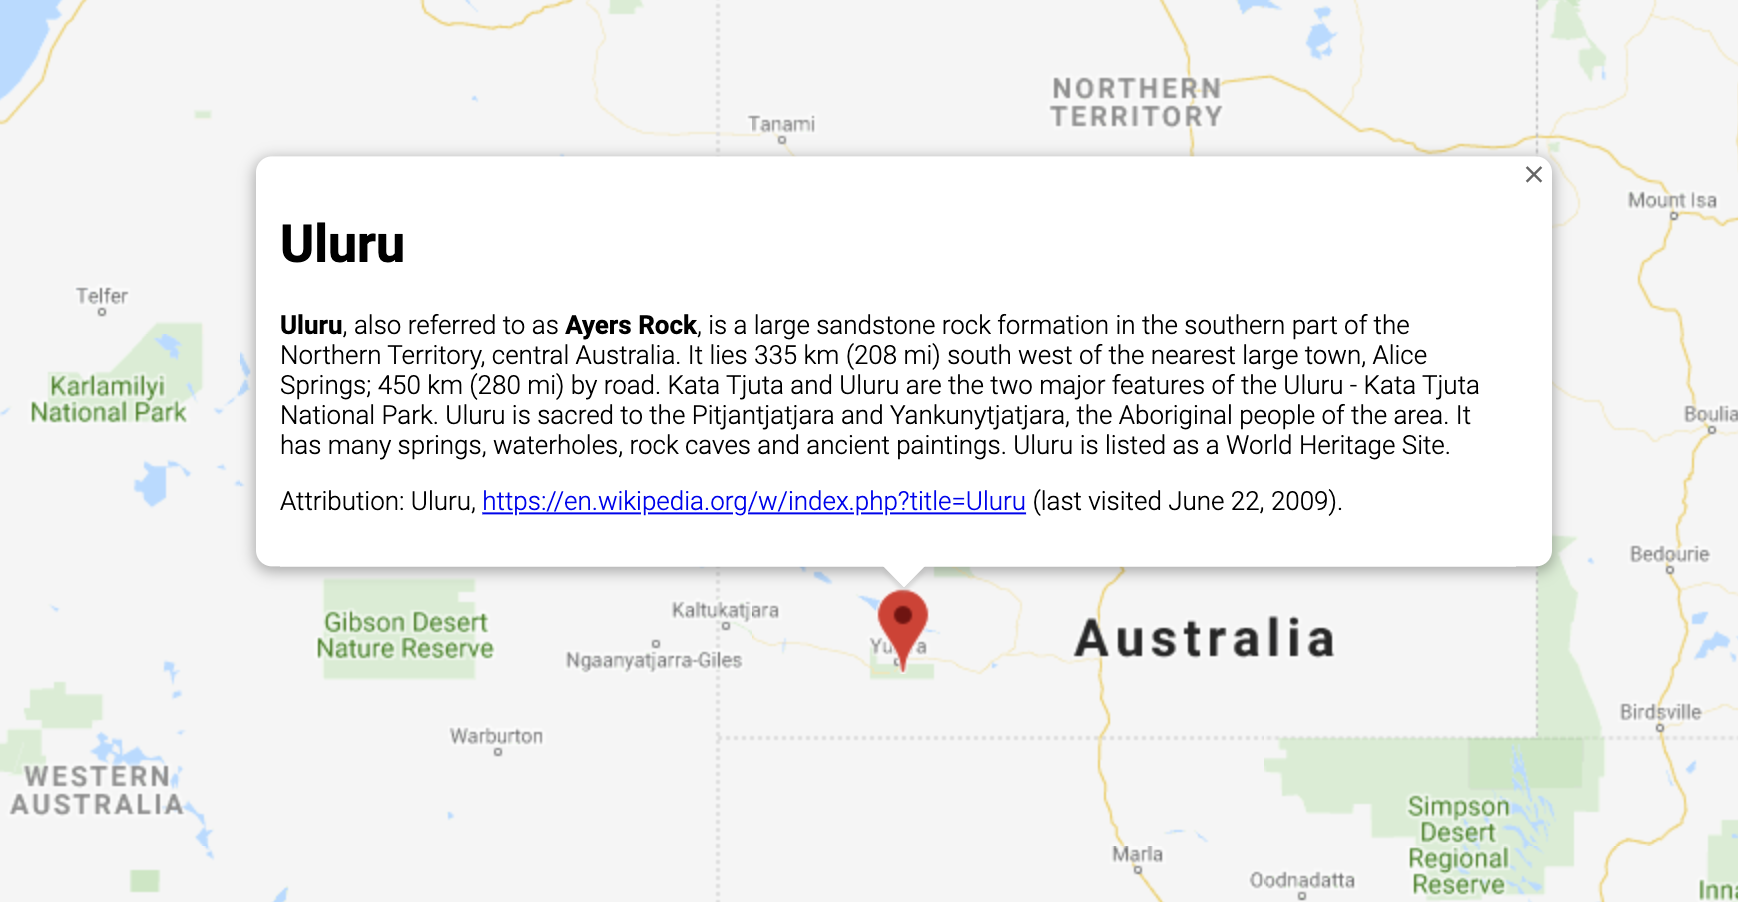 Okno InfoWindow wyświetlające informacje o lokalizacji w Australii.